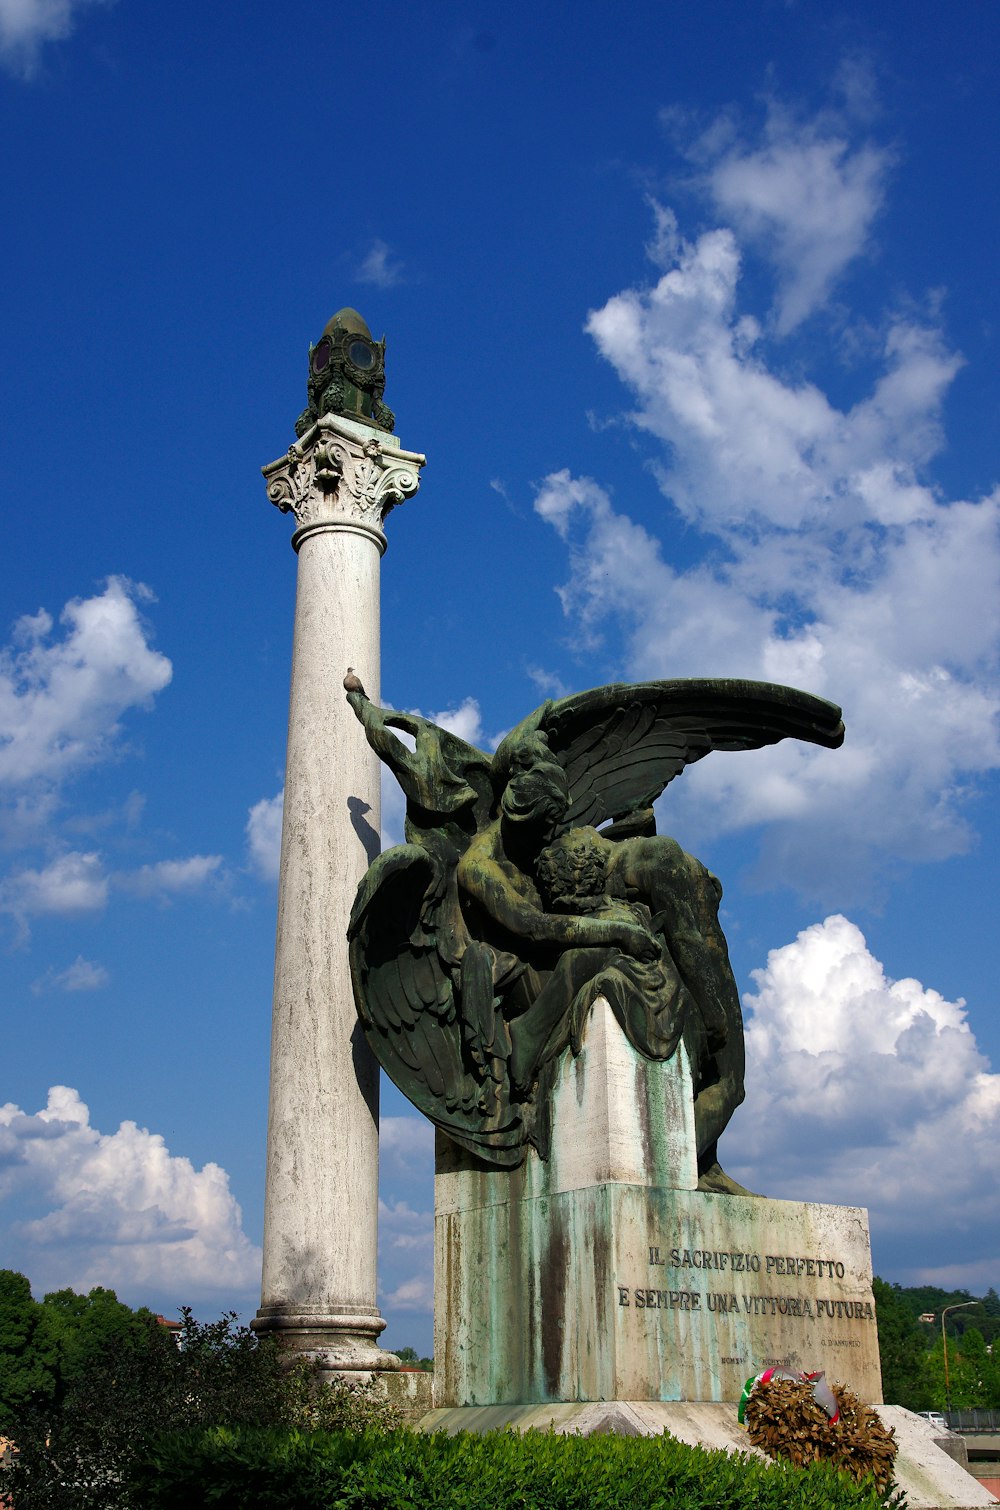 a statue of a winged bird next to a pillar